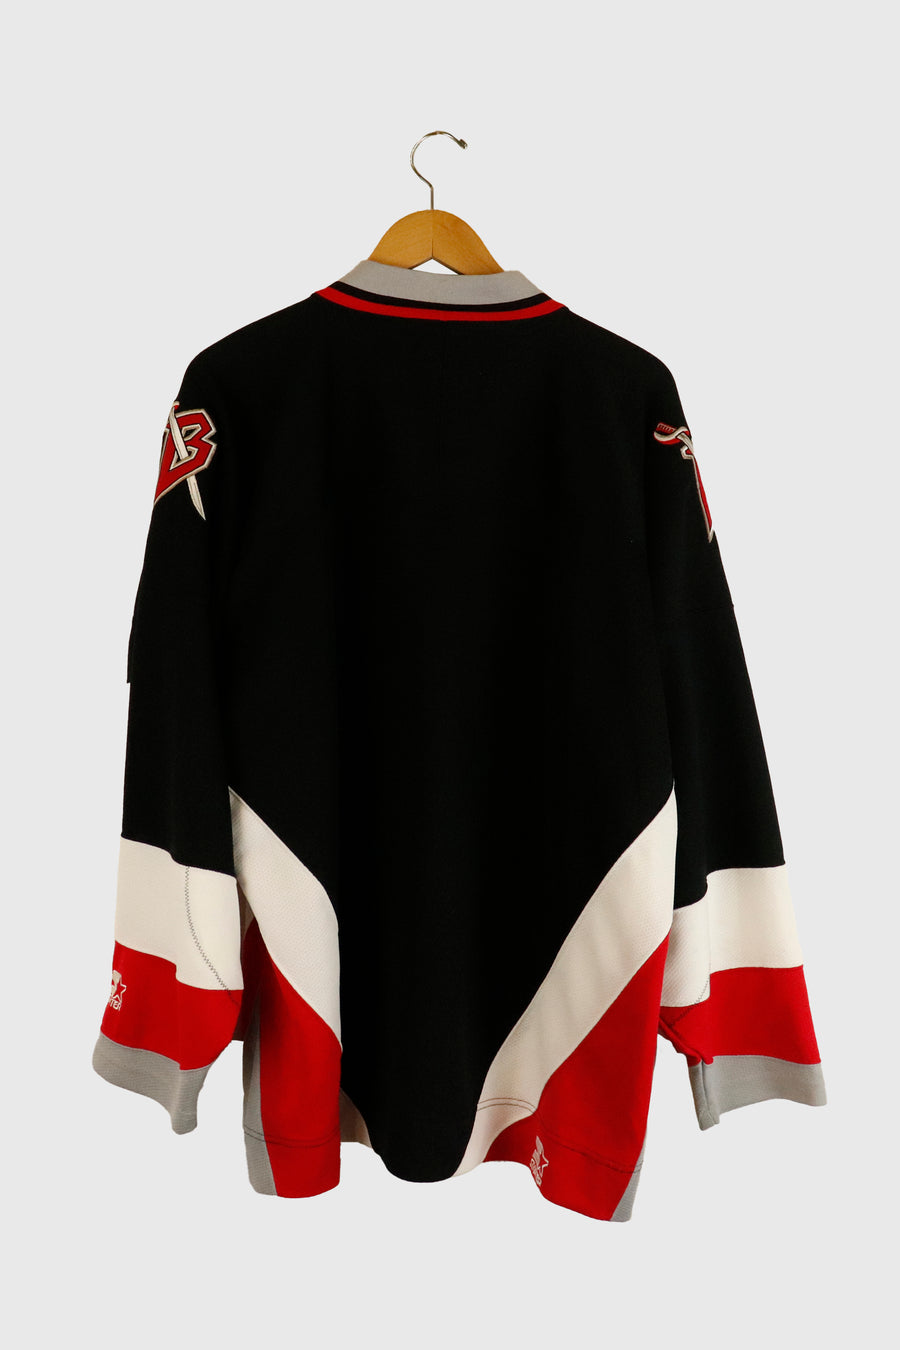 Vintage Starter NHL Official Licensed Product Sabres Jersey Sz XL